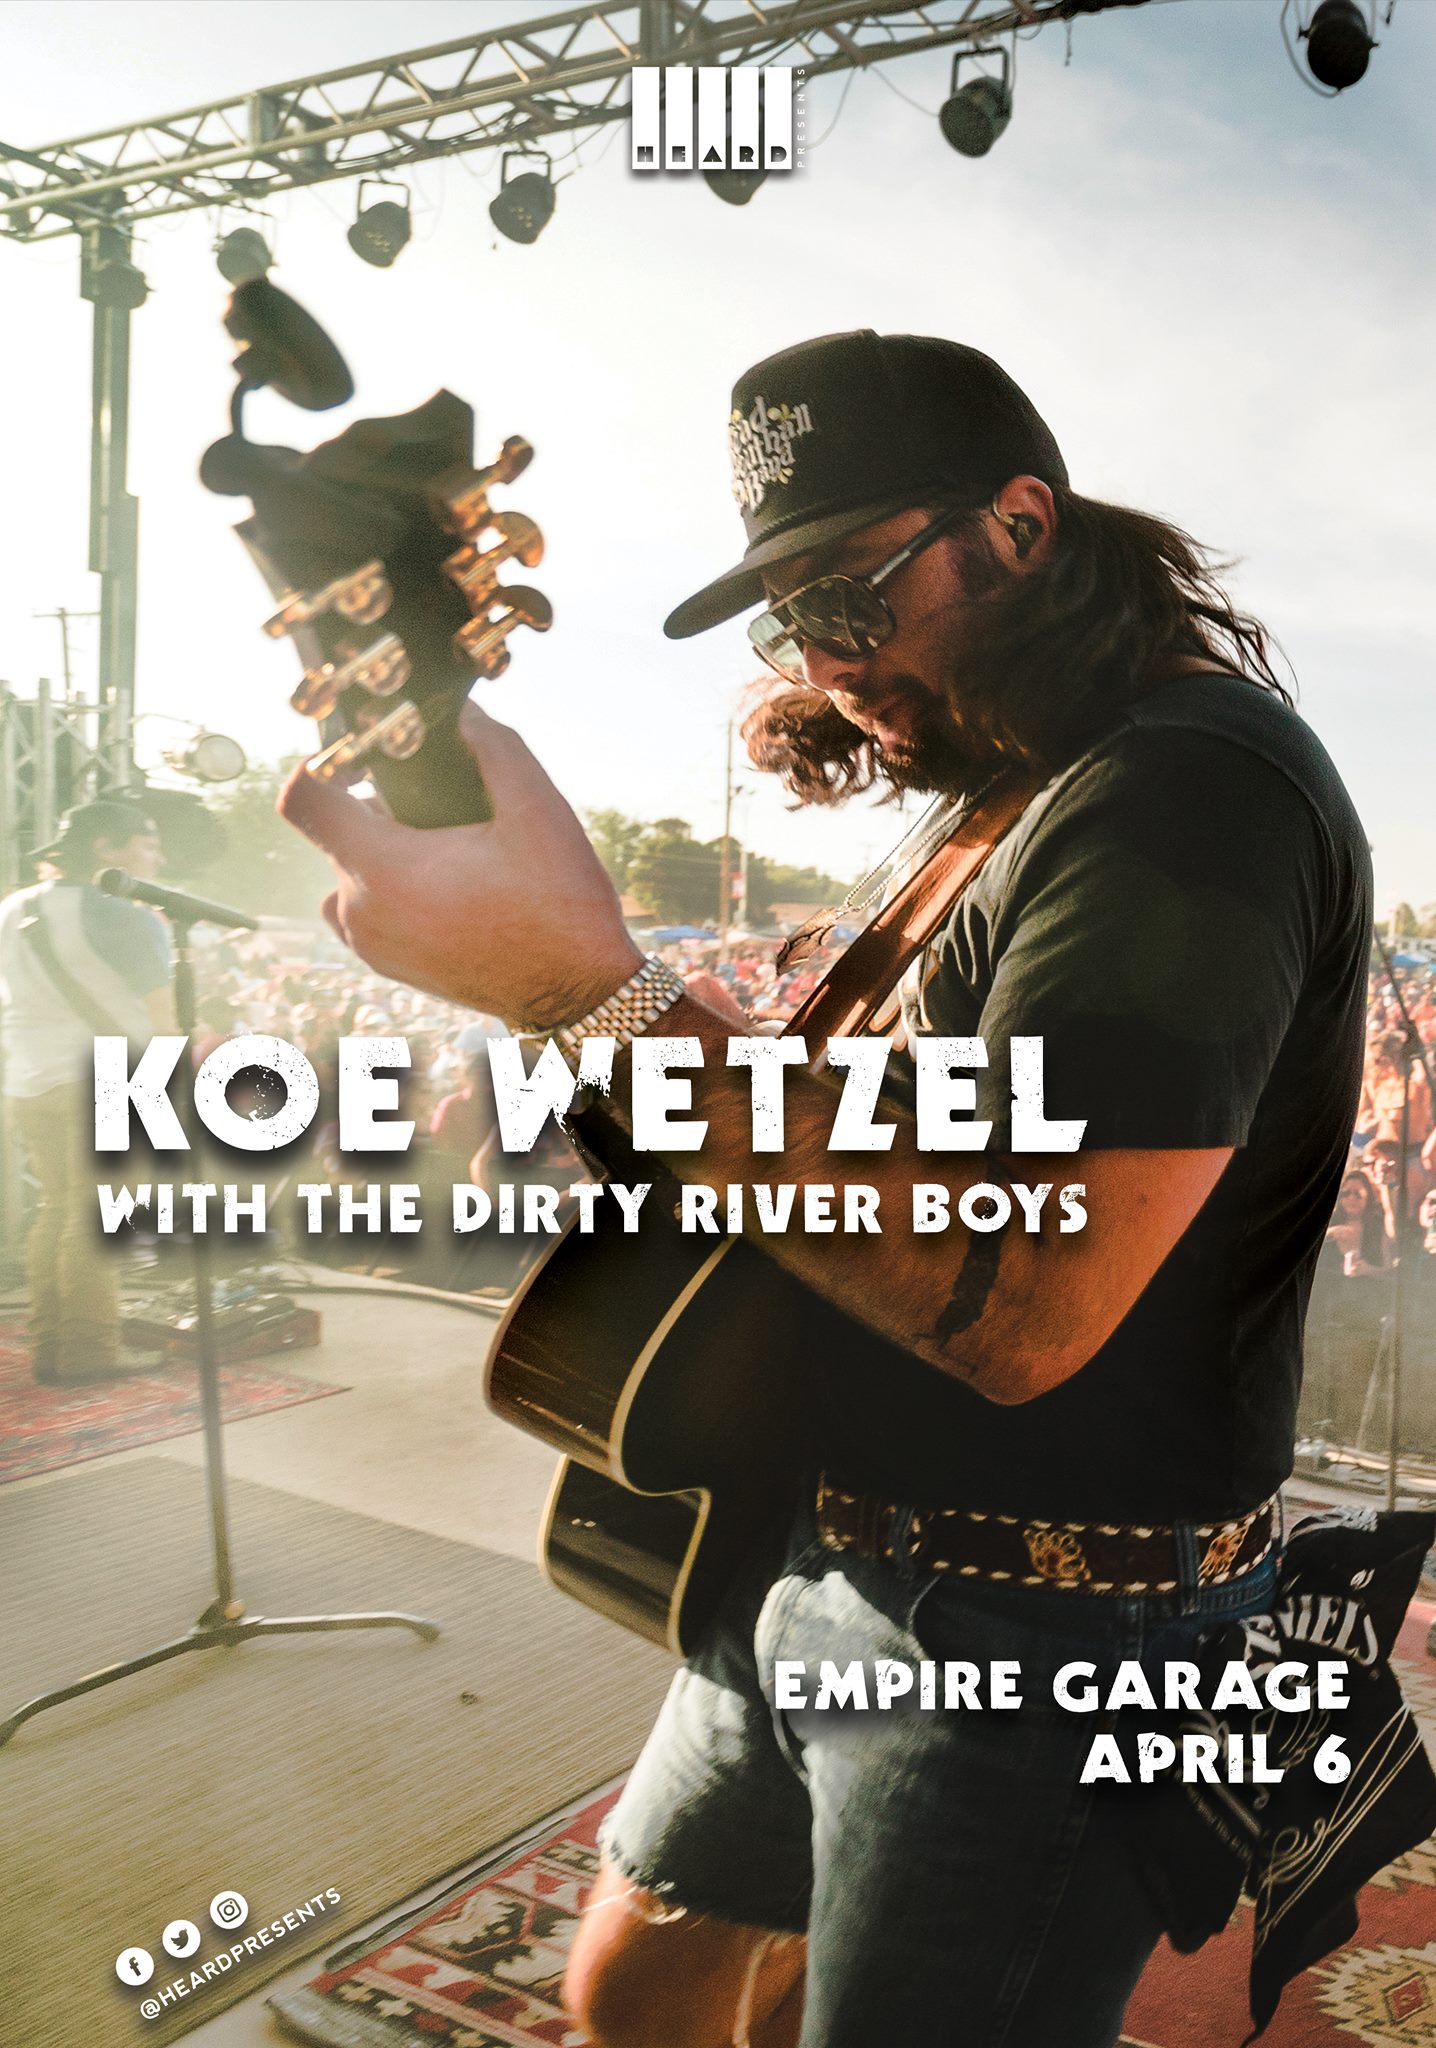 Buy Tickets to Koe Wetzel in Austin on Apr 06, 2019